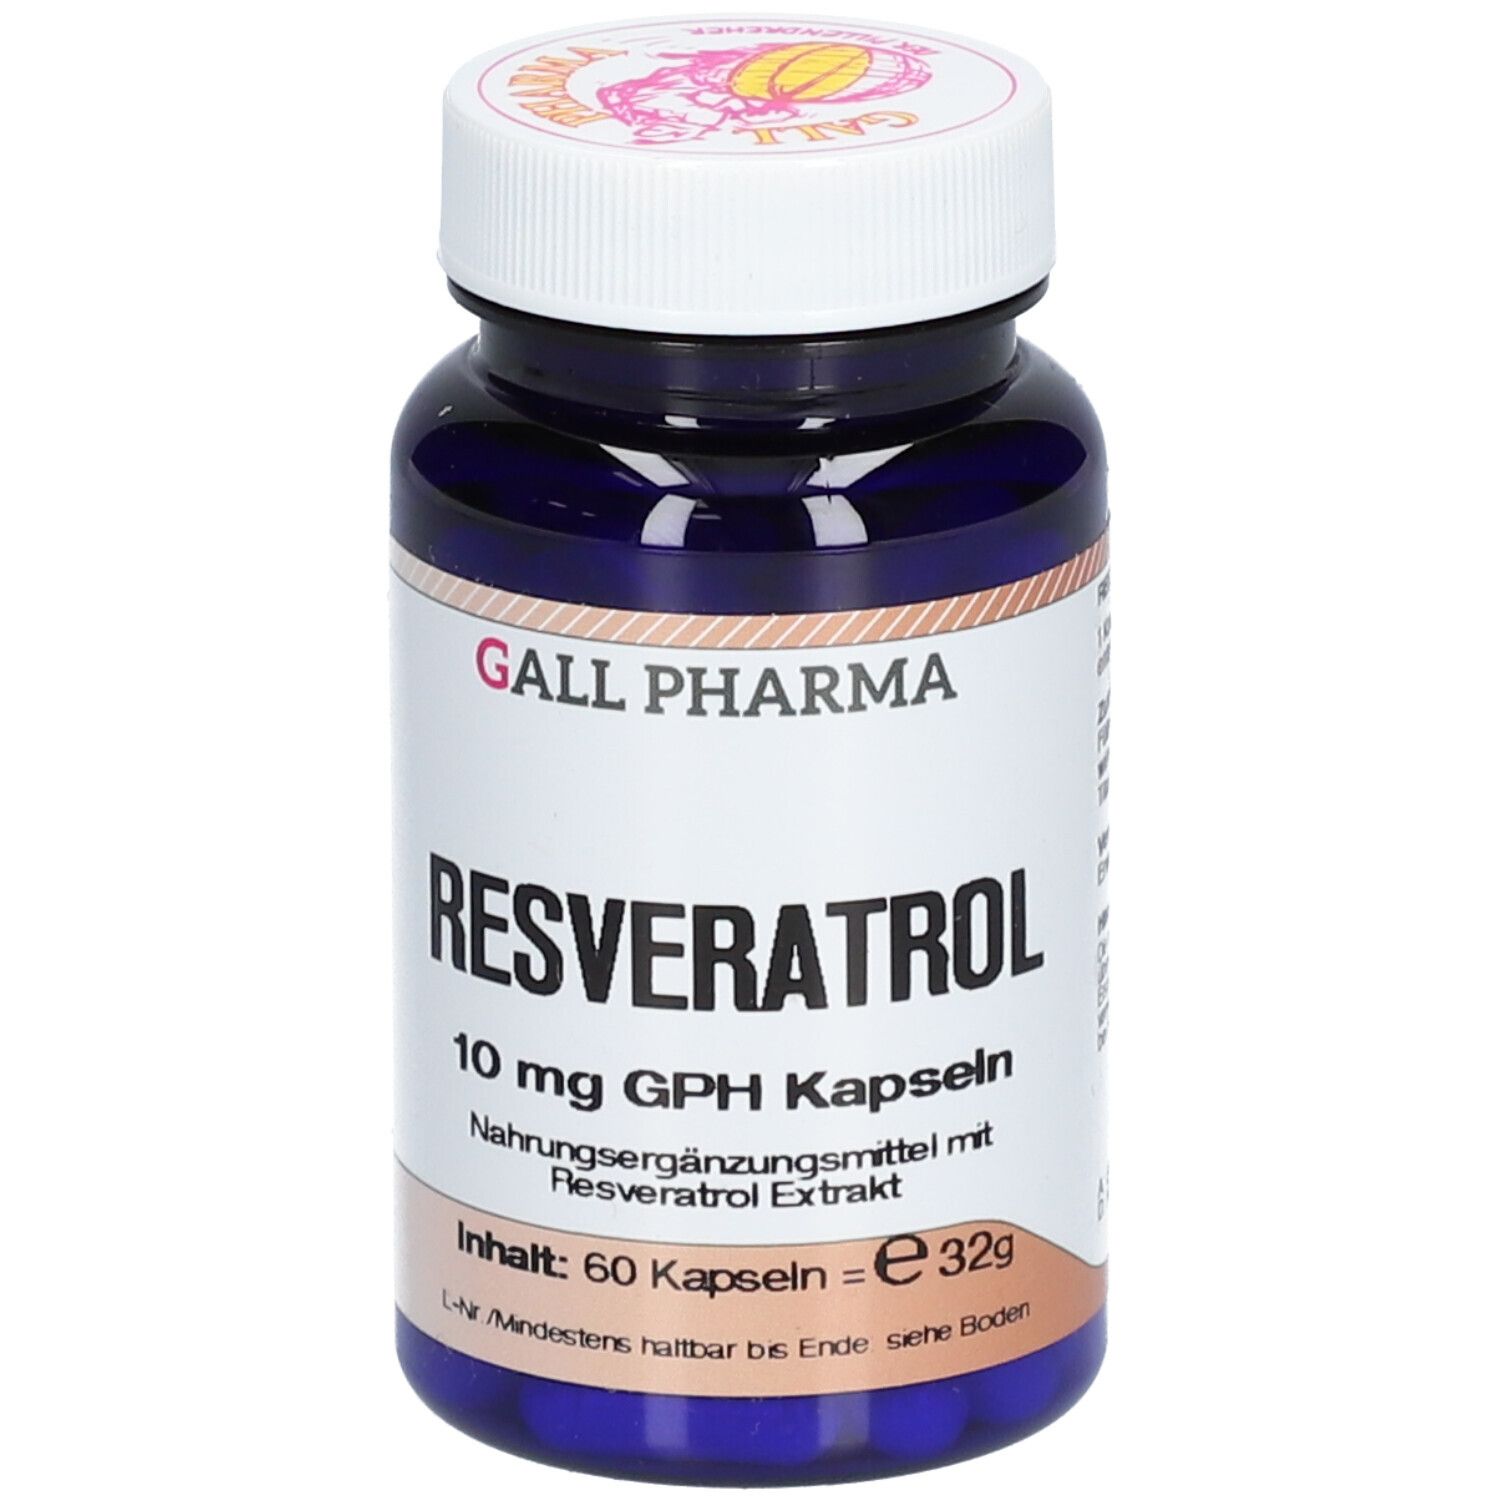 Image of GALL PHARMA Resveratrol 10 mg GPH Kapseln